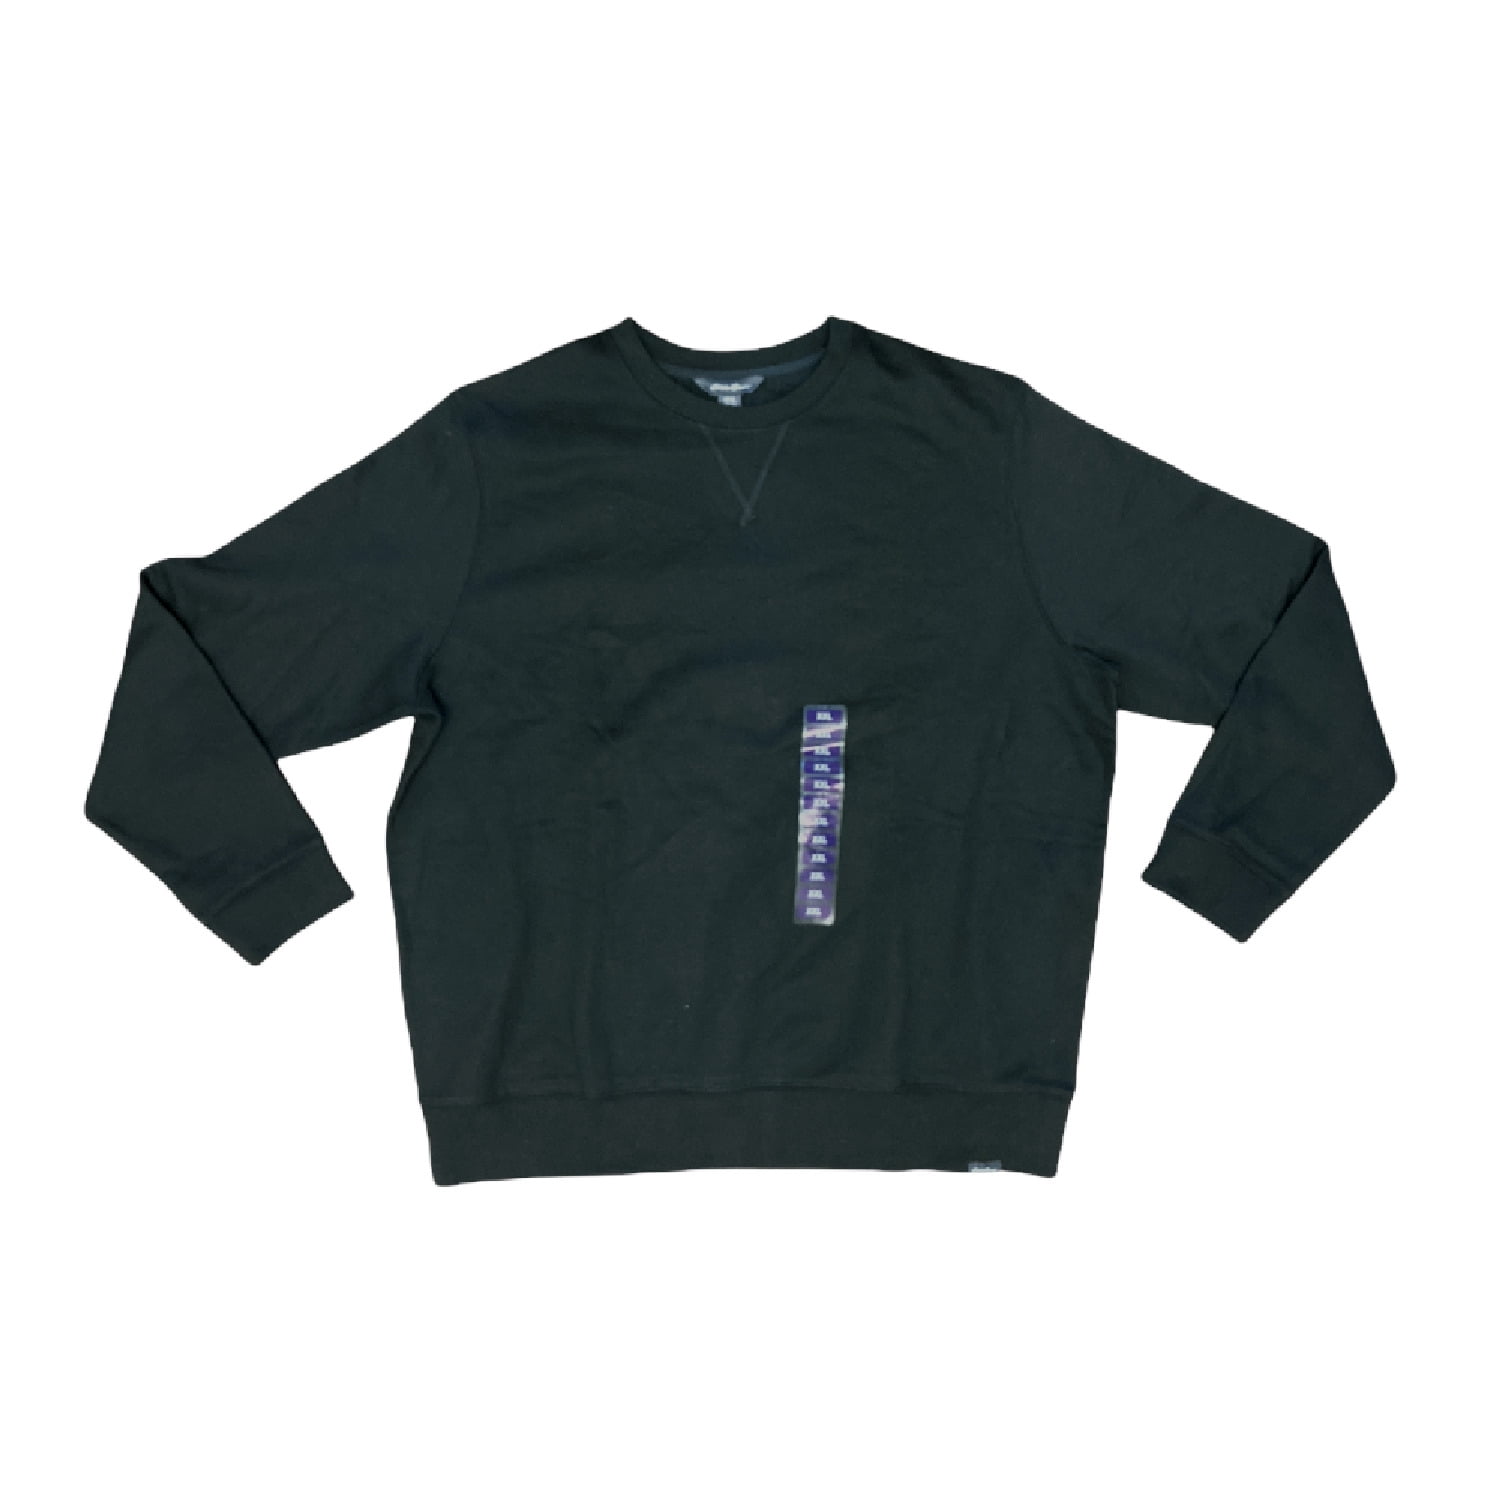 Eddie Bauer Men's Super Soft & Warm Crew Neck Fleece Sweatshirt (Black, M)